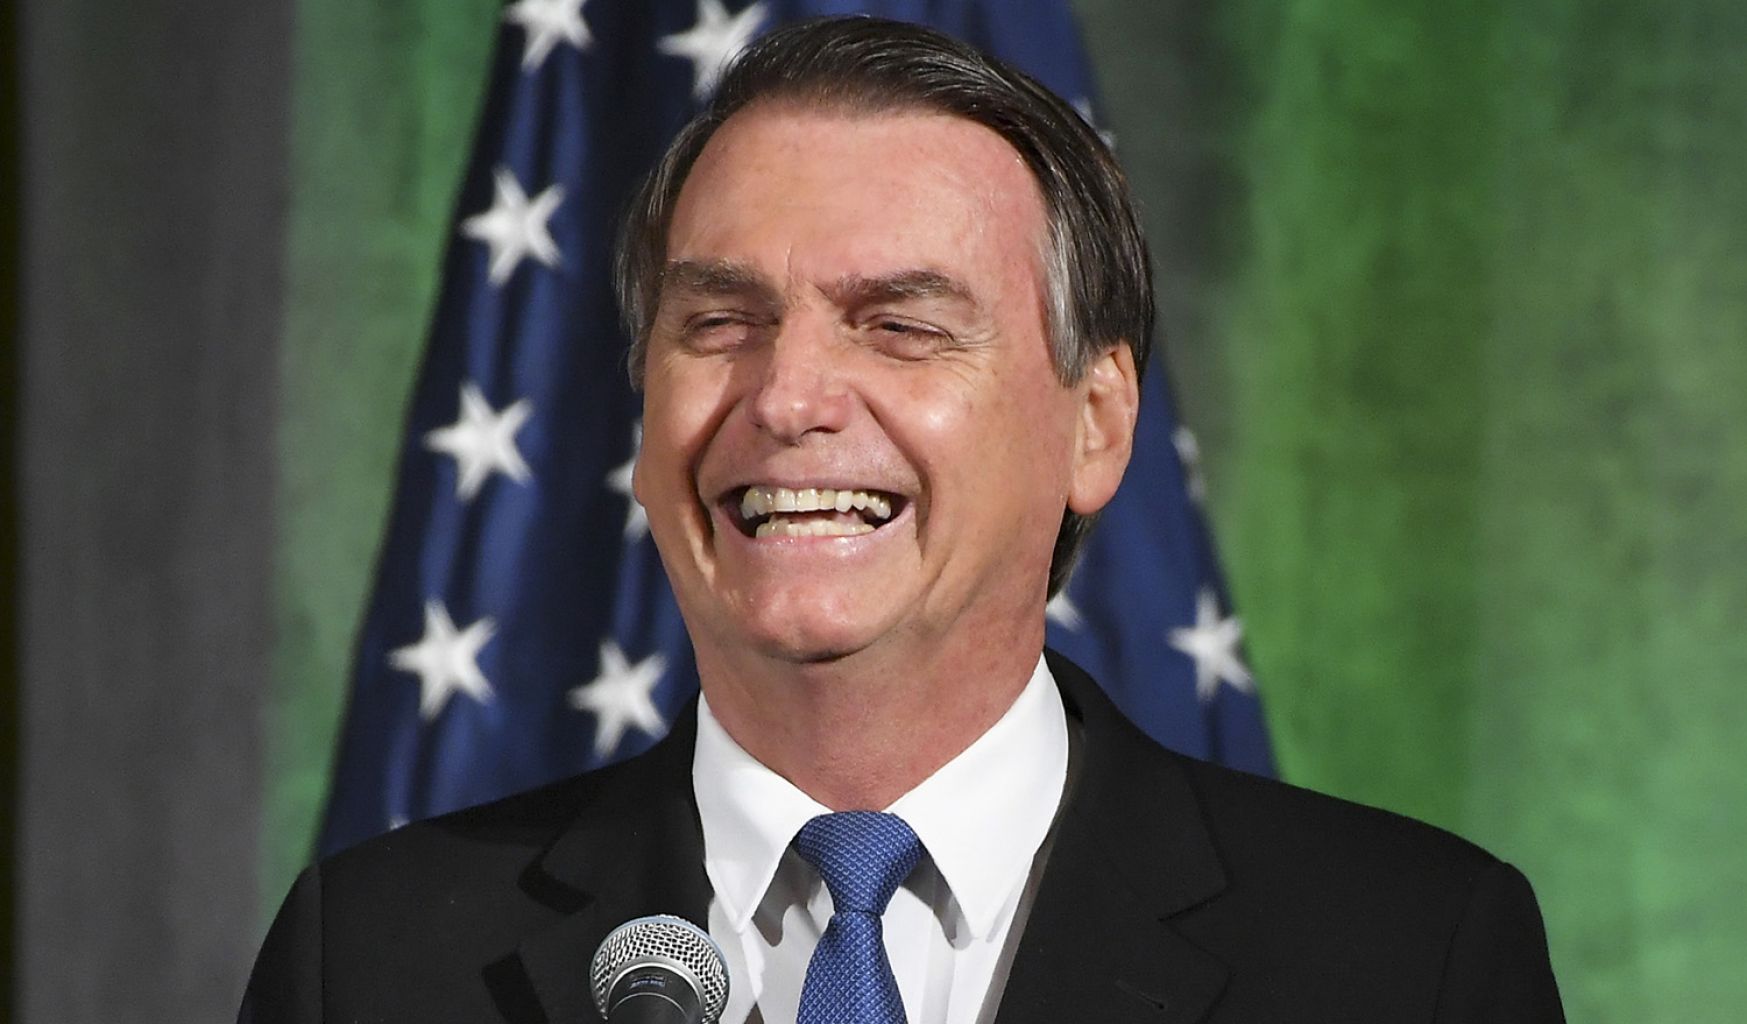 Por Previdência, Bolsonaro vai entregar cargos a indicados de partidos